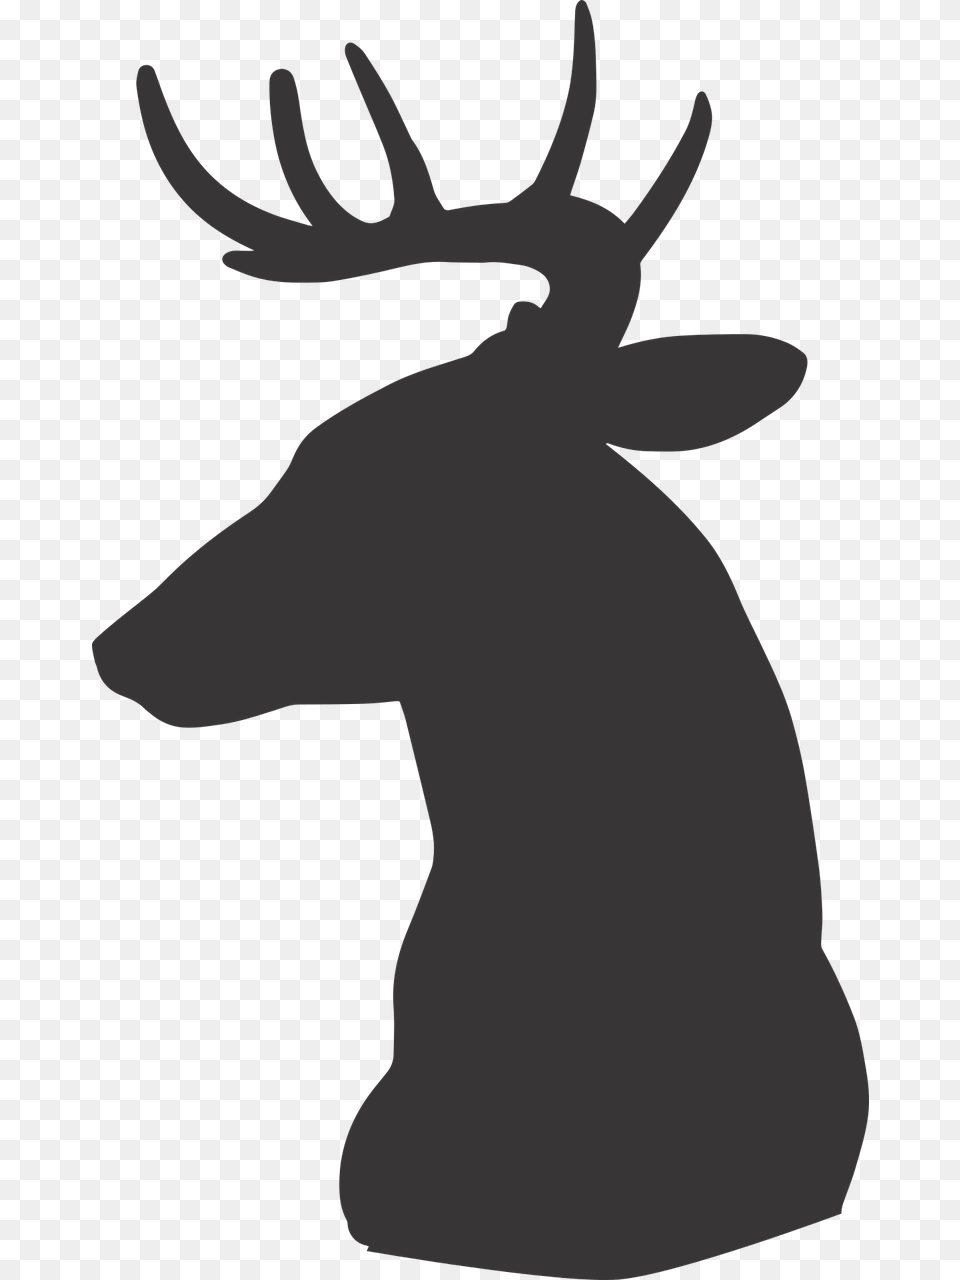 Siluet Kepala Rusa, Animal, Deer, Mammal, Wildlife Free Png